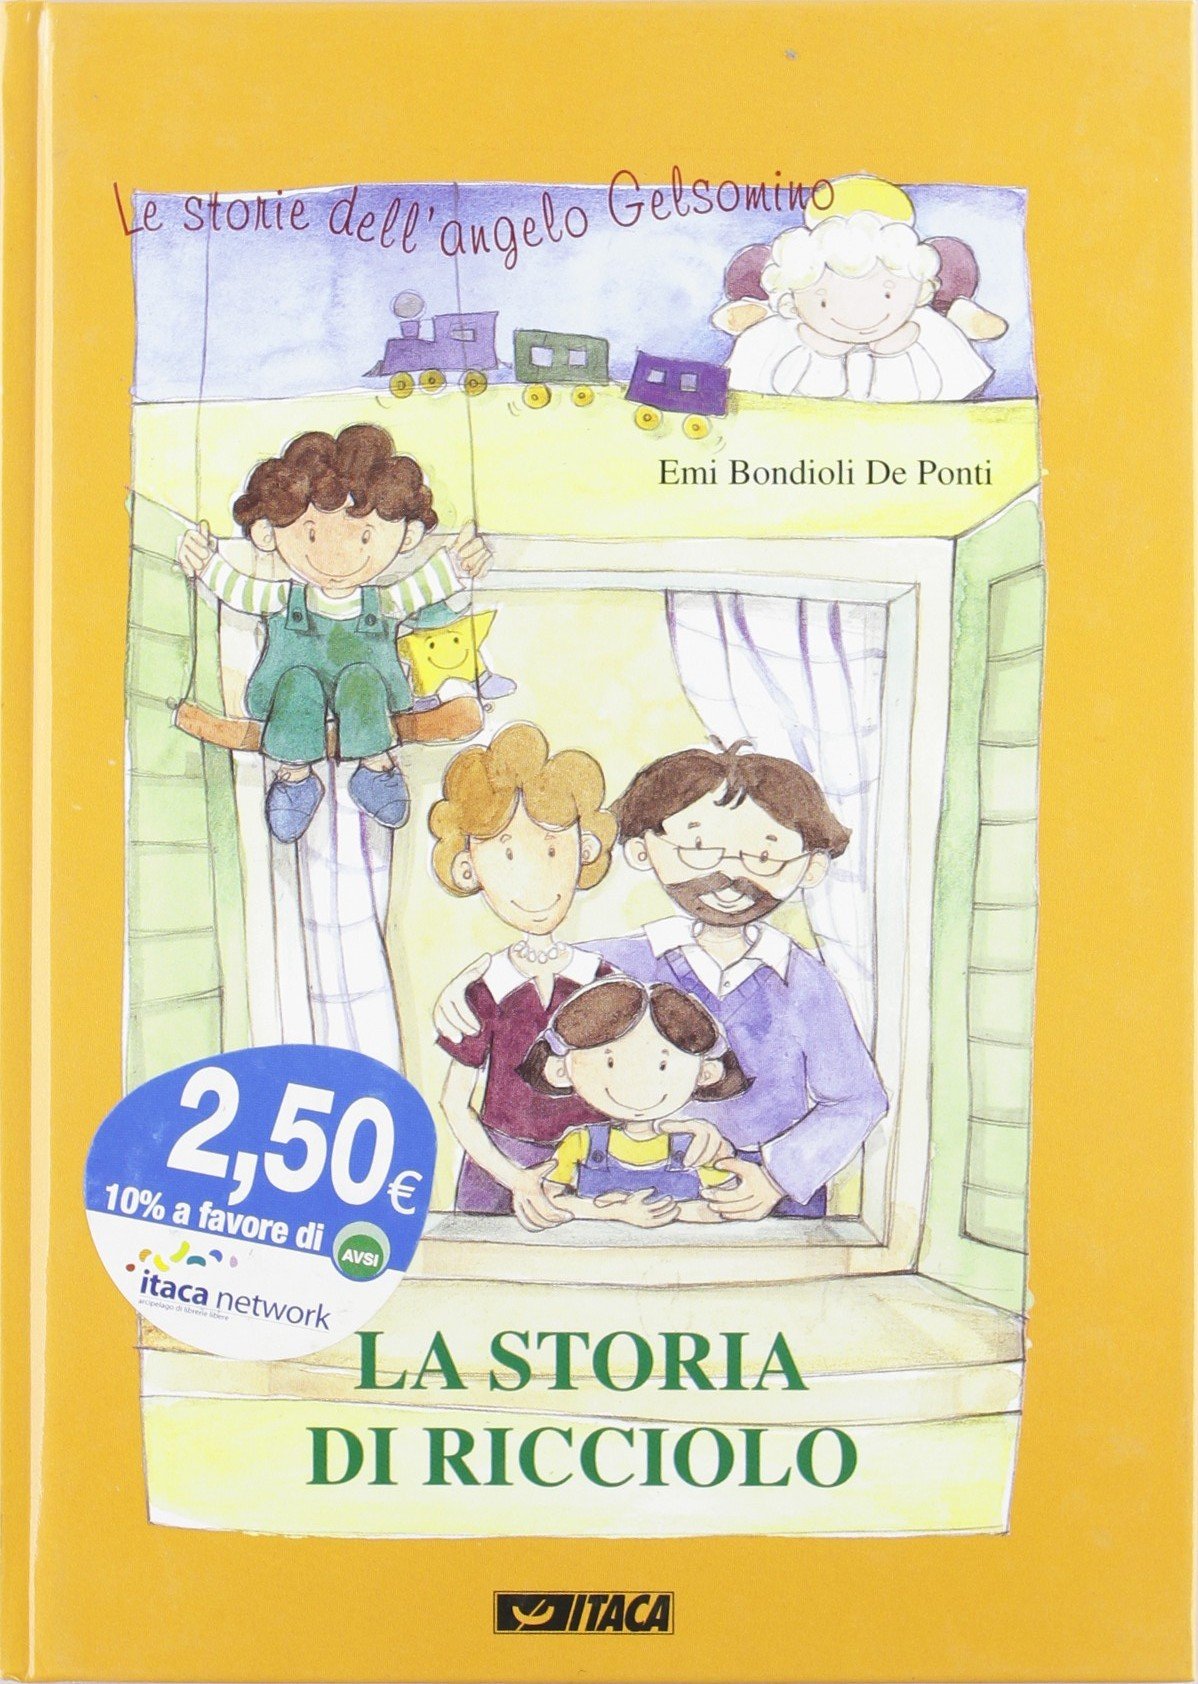 Bondioli  De Ponti E. (2000). La storia di ricciolo. Edit Faenza srl